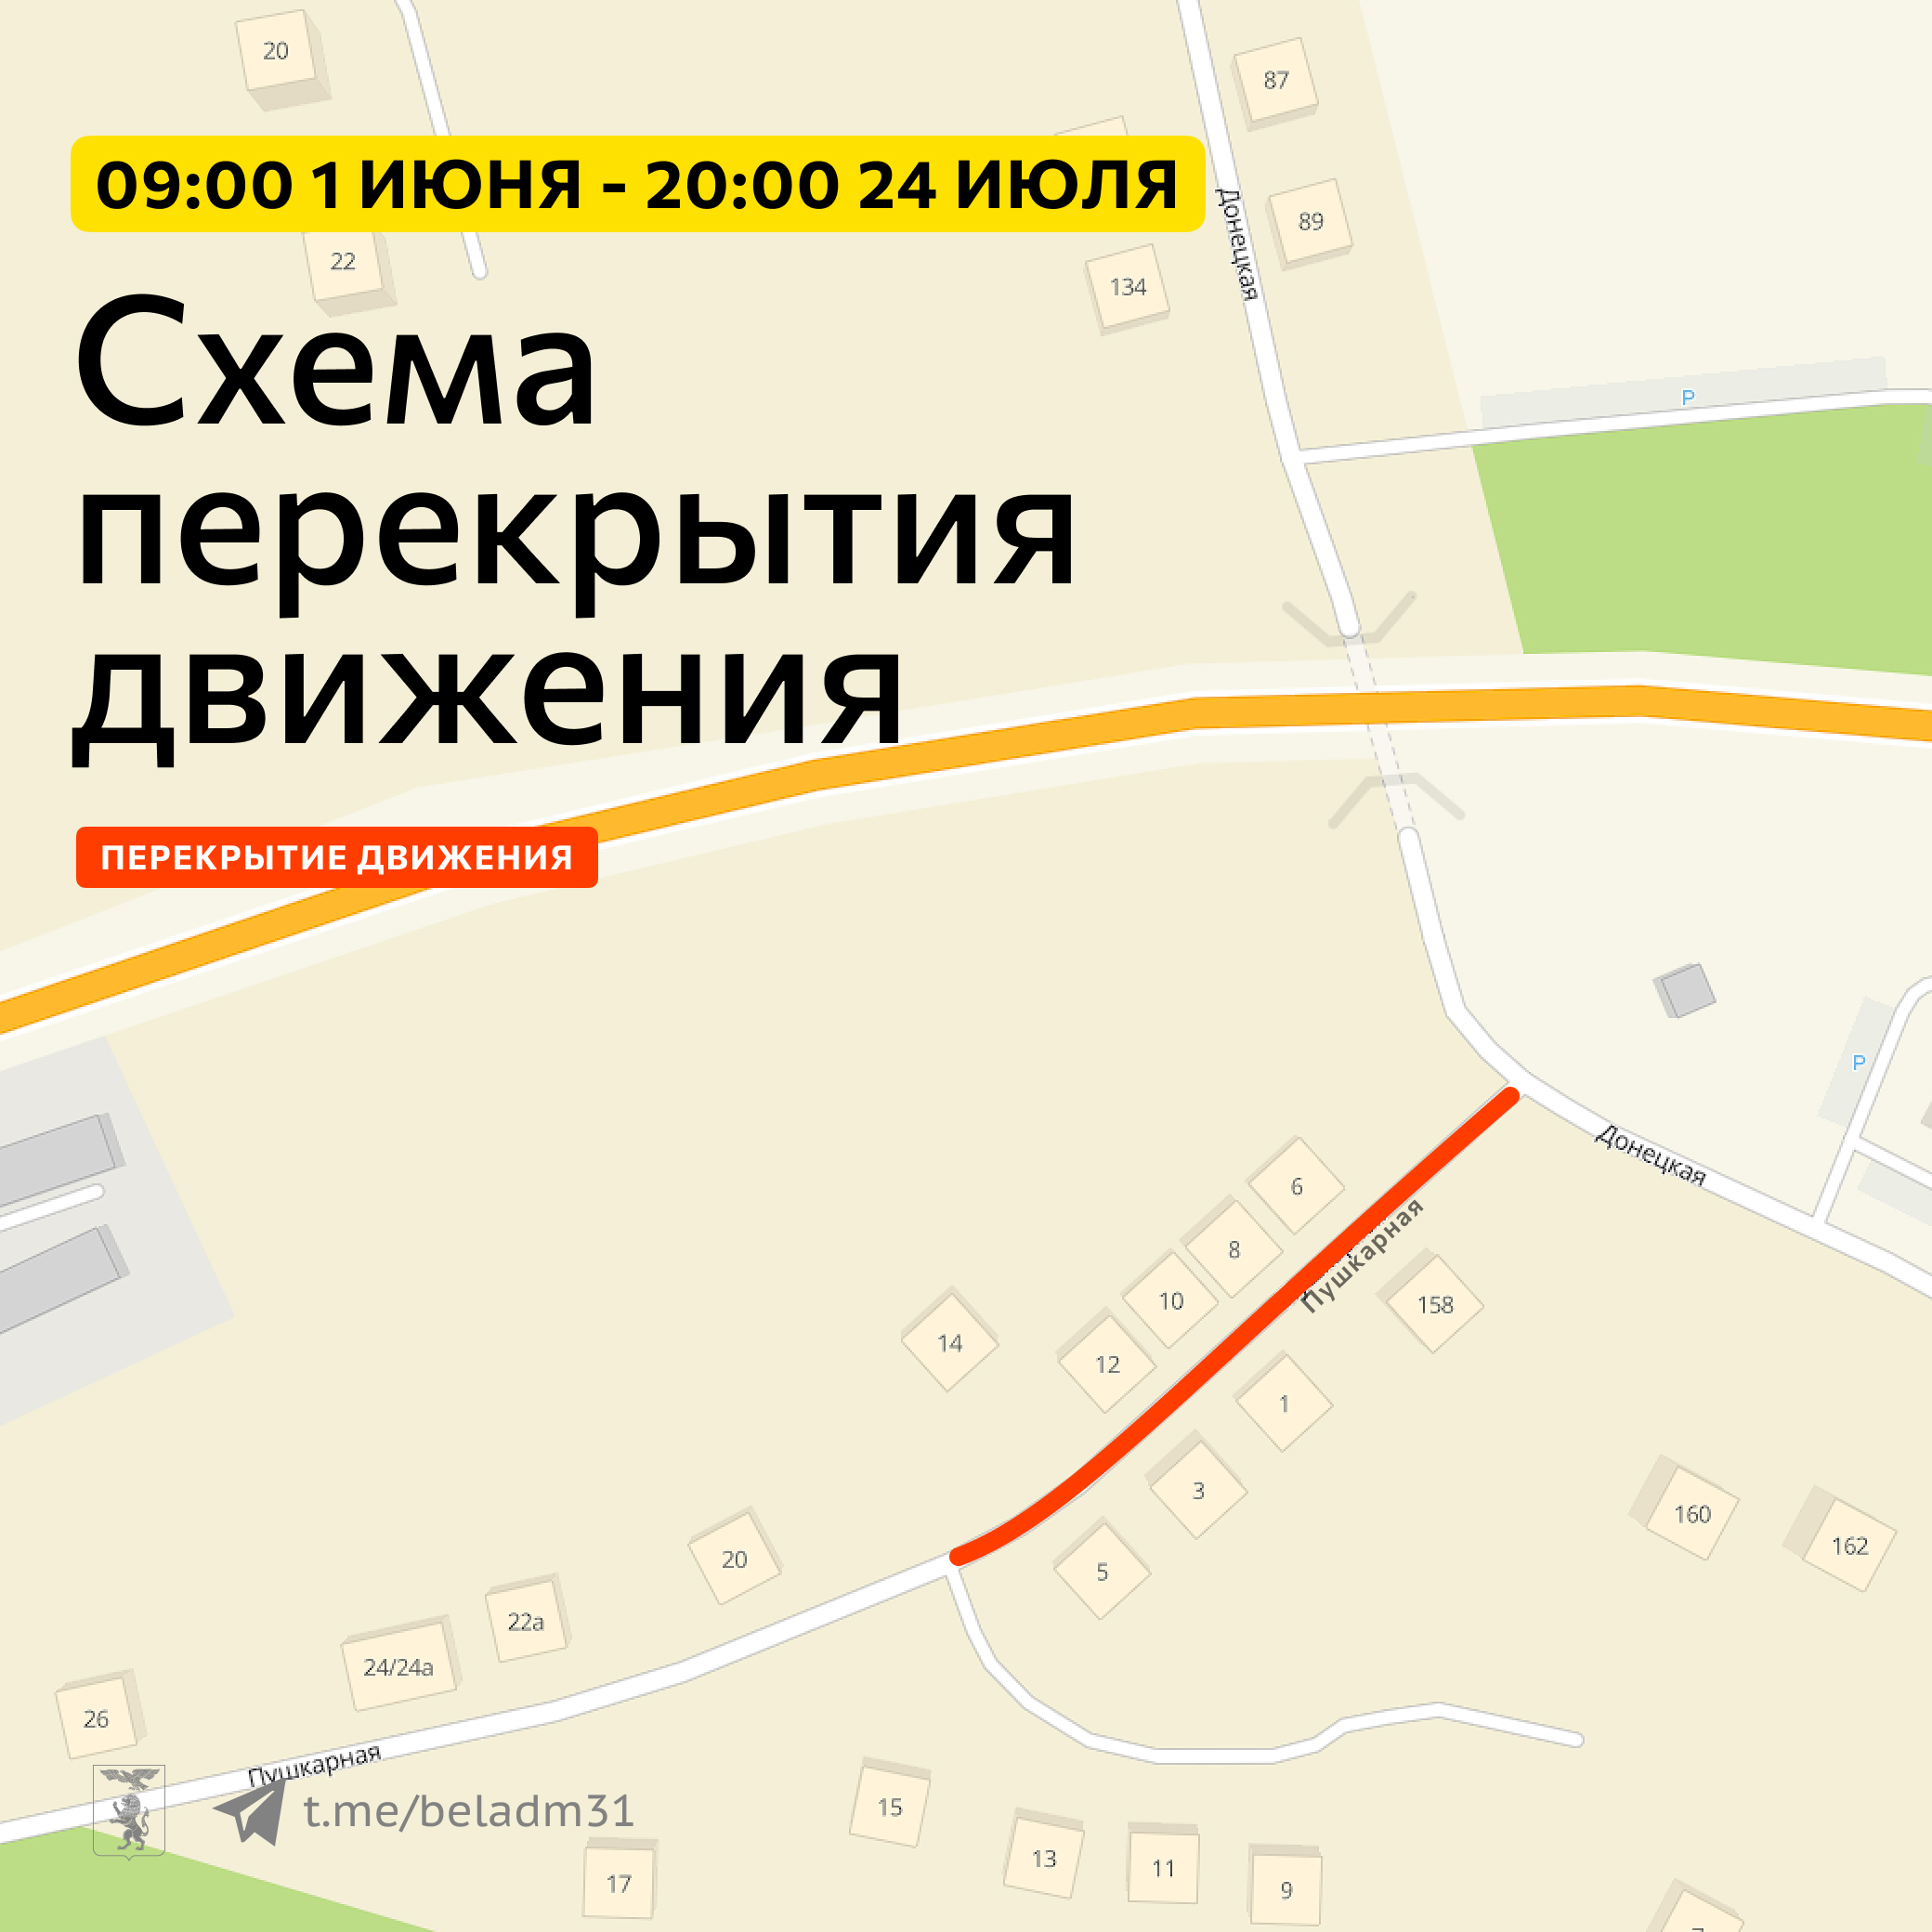 Ограничение движения на ул. Пушкарная продлят до 24 июля.